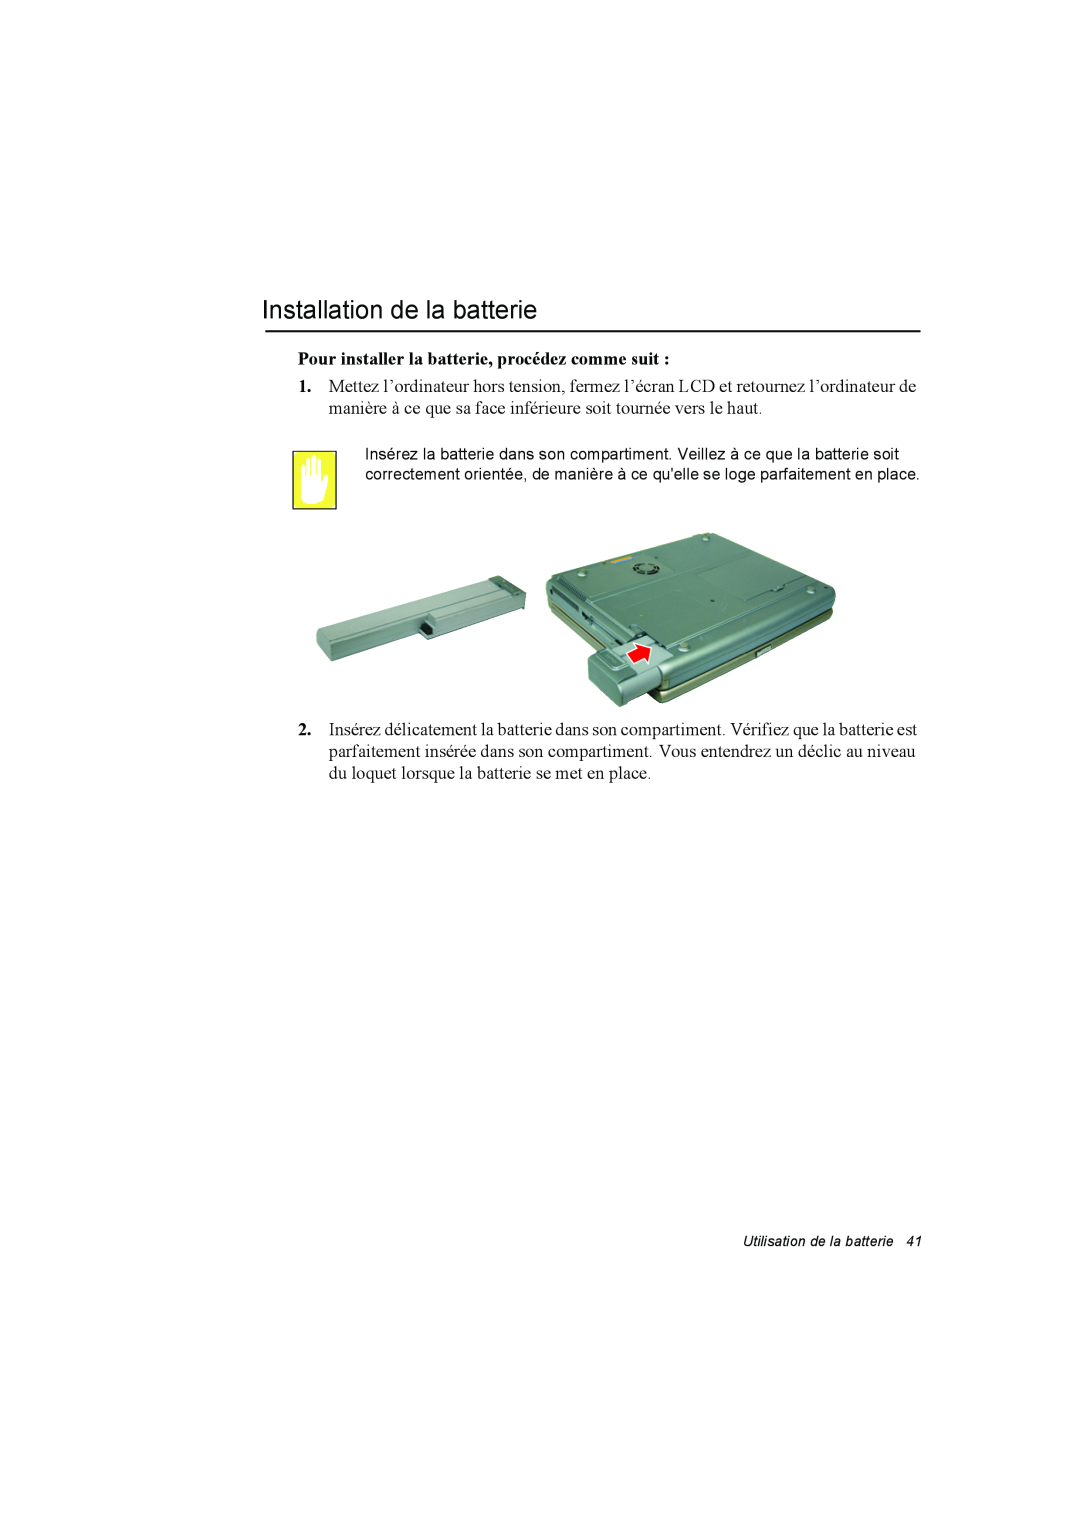 Samsung NA10DH00G5/SEF, NA10AJ0041/SEF manual Installation de la batterie, Pour installer la batterie, procédez comme suit 